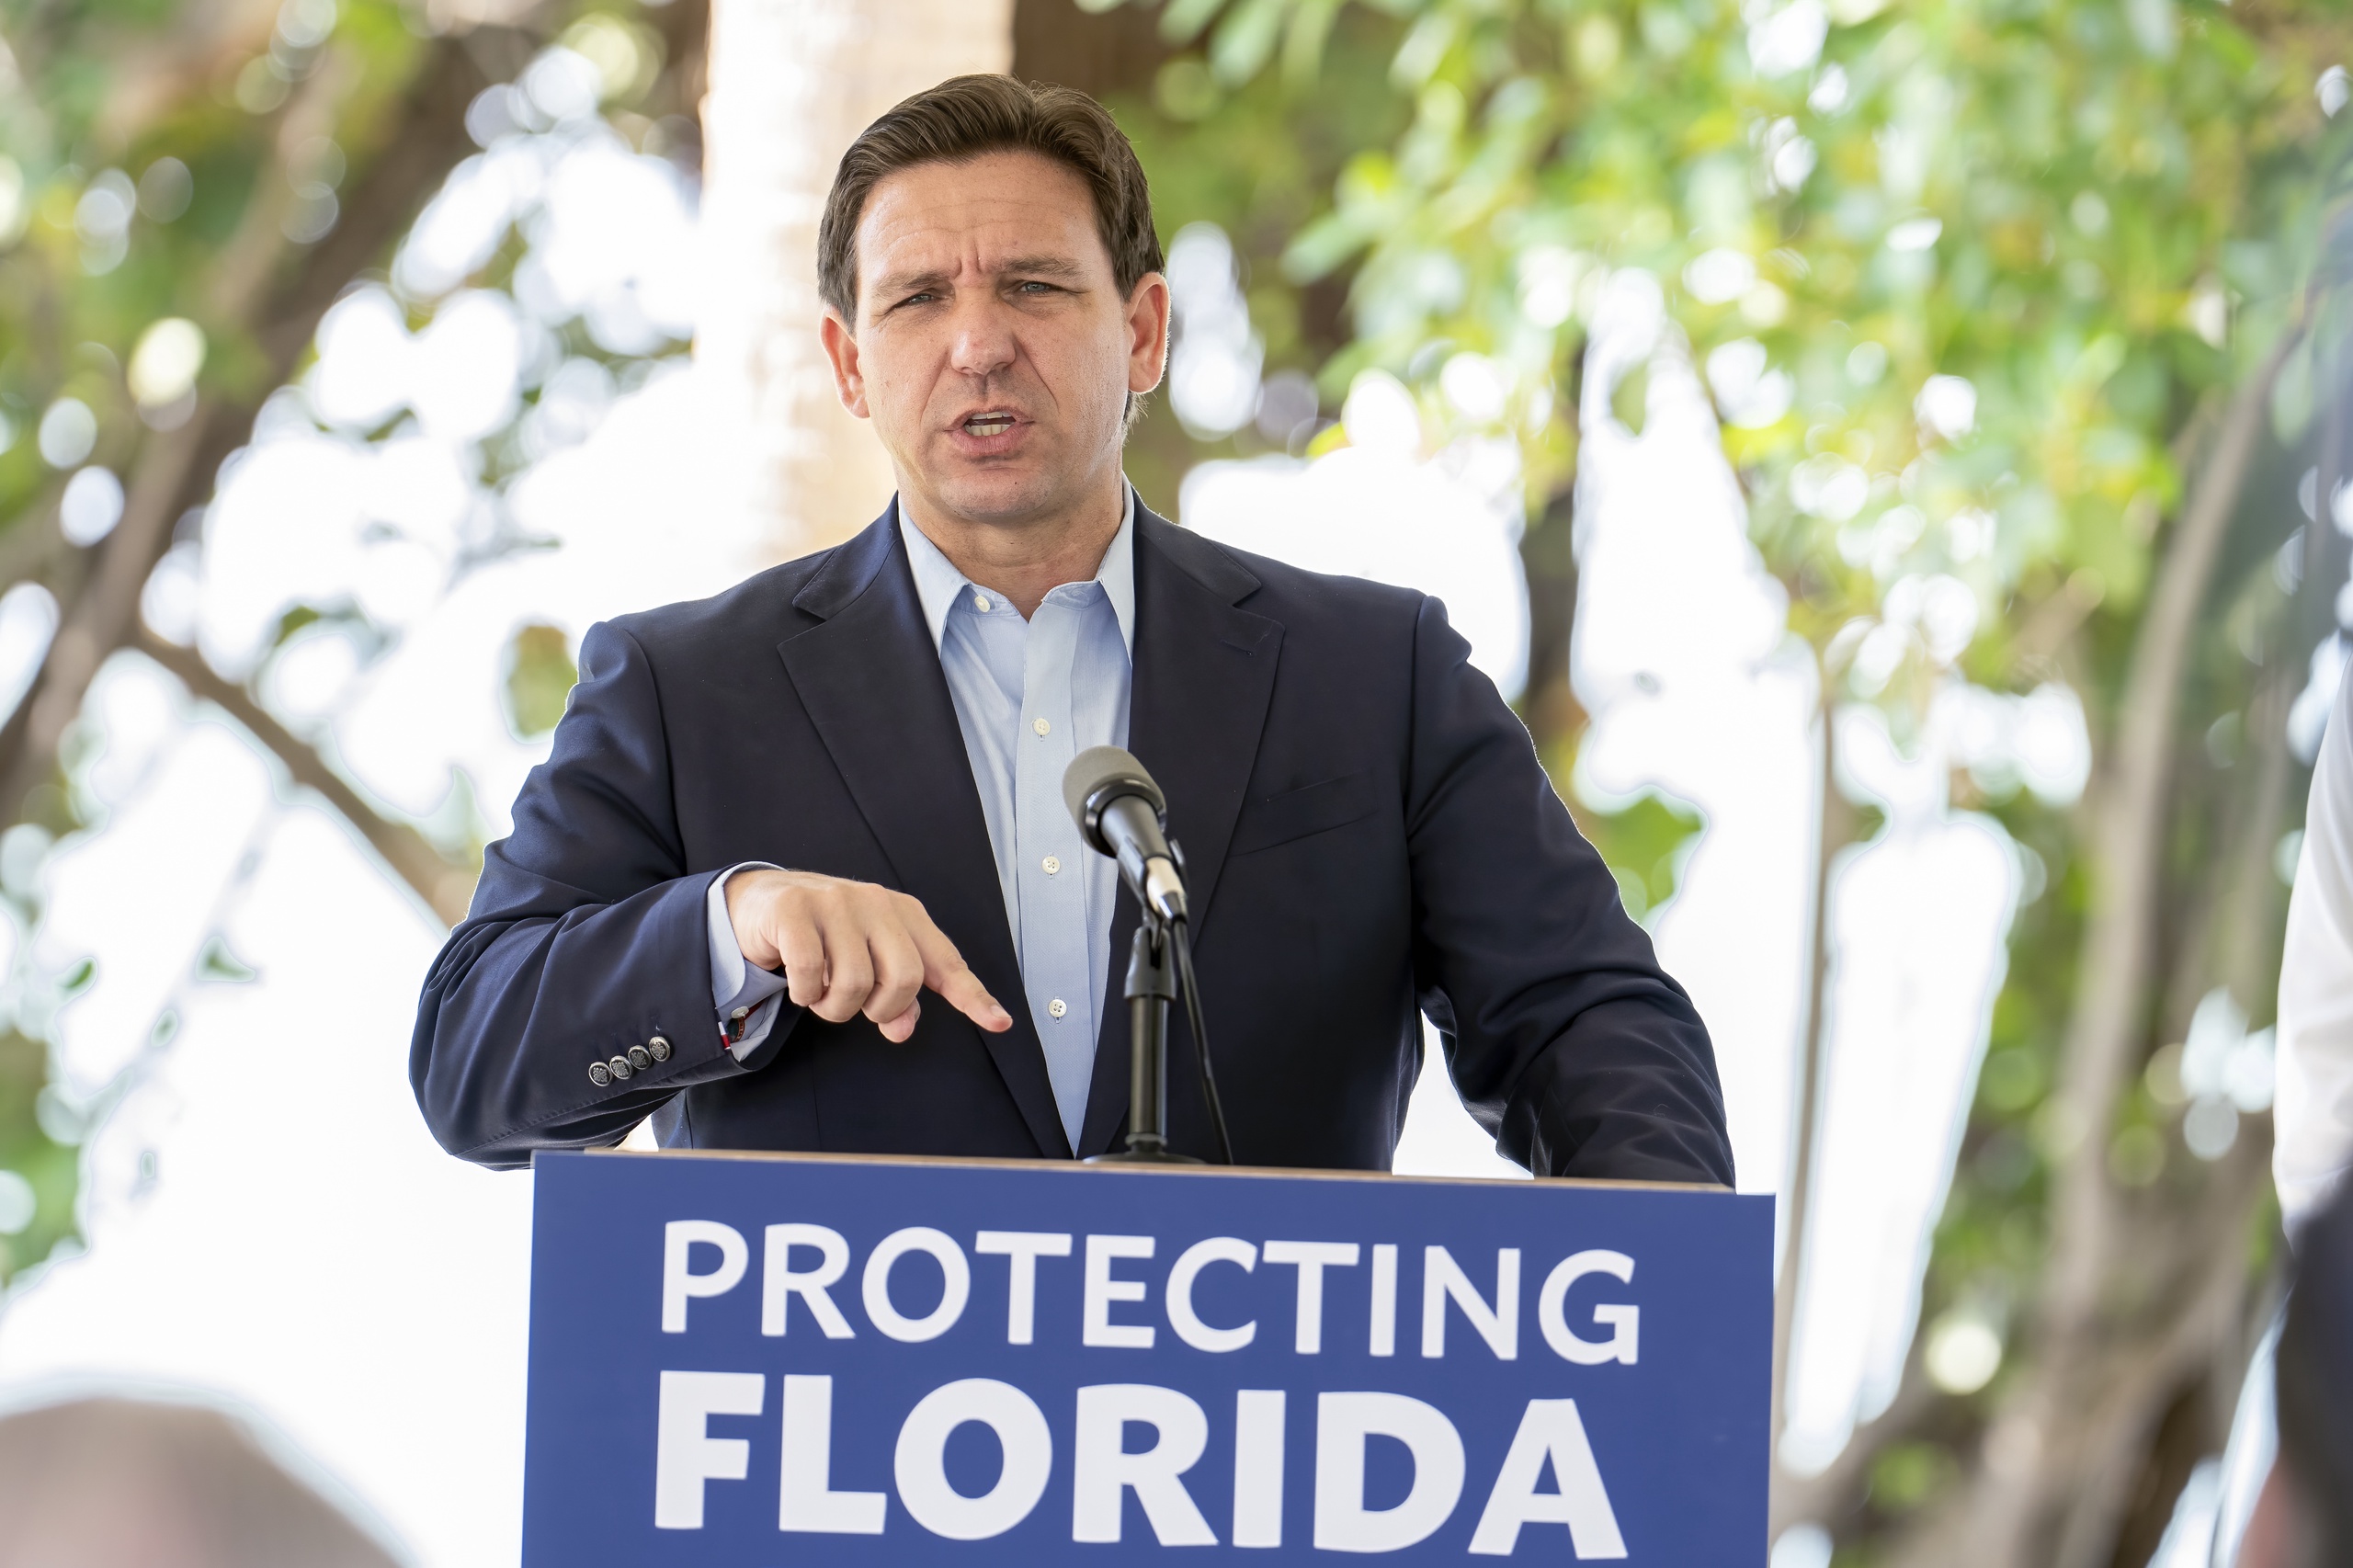 Gouverneur Ron DeSantis. DeSantis staat bekend als rabiaat anti-woke, na zijn herverkiezingsoverwinning gaf hij een speech waarin hij aankondigde dat Florida de staat is 'waar woke gaat sterven'. 